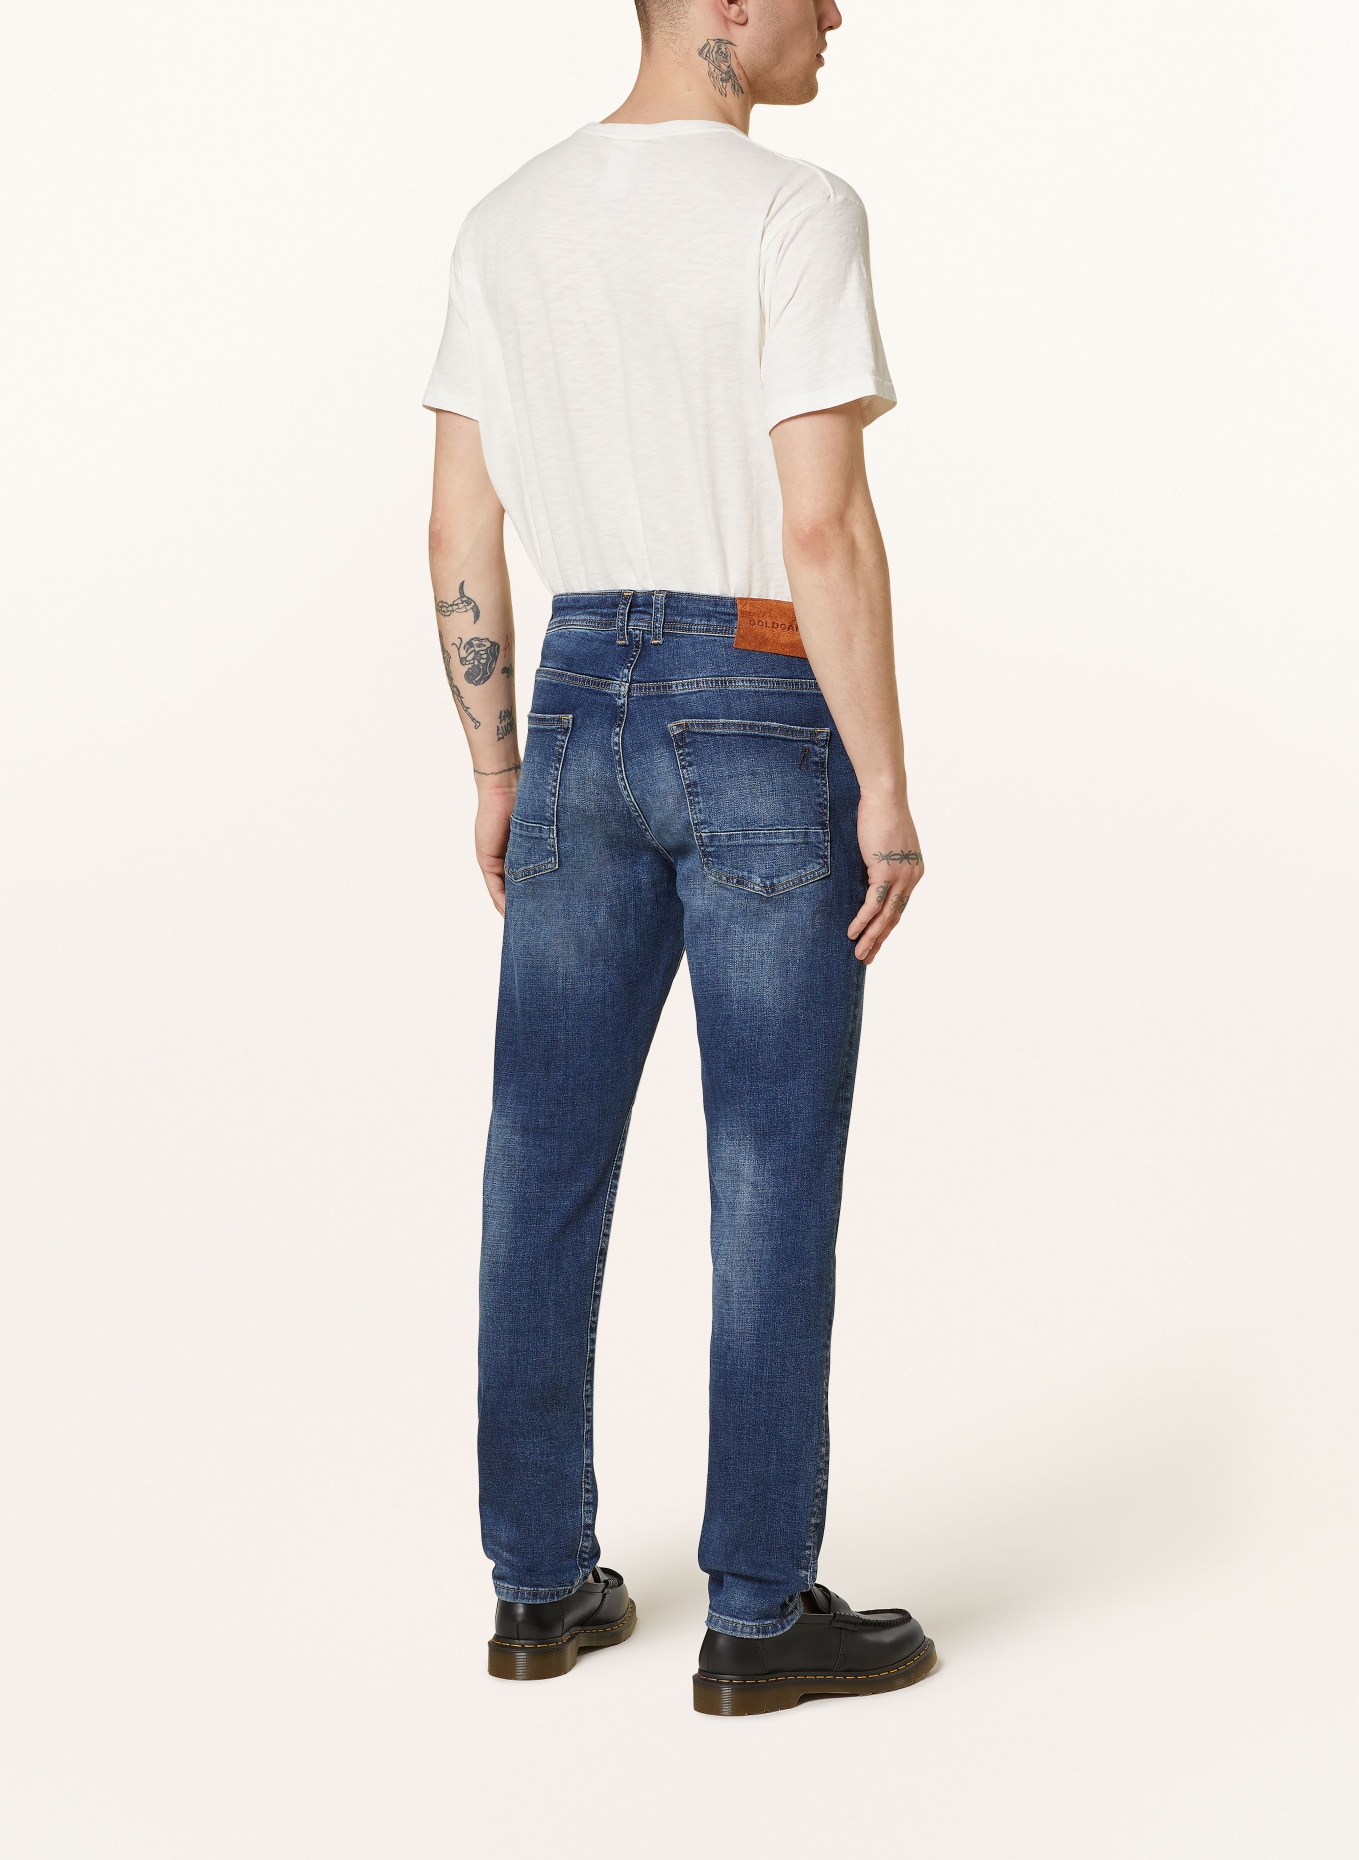 GOLDGARN DENIM Jeans U2 tapered fit, Color: 1090 midblue (Image 3)